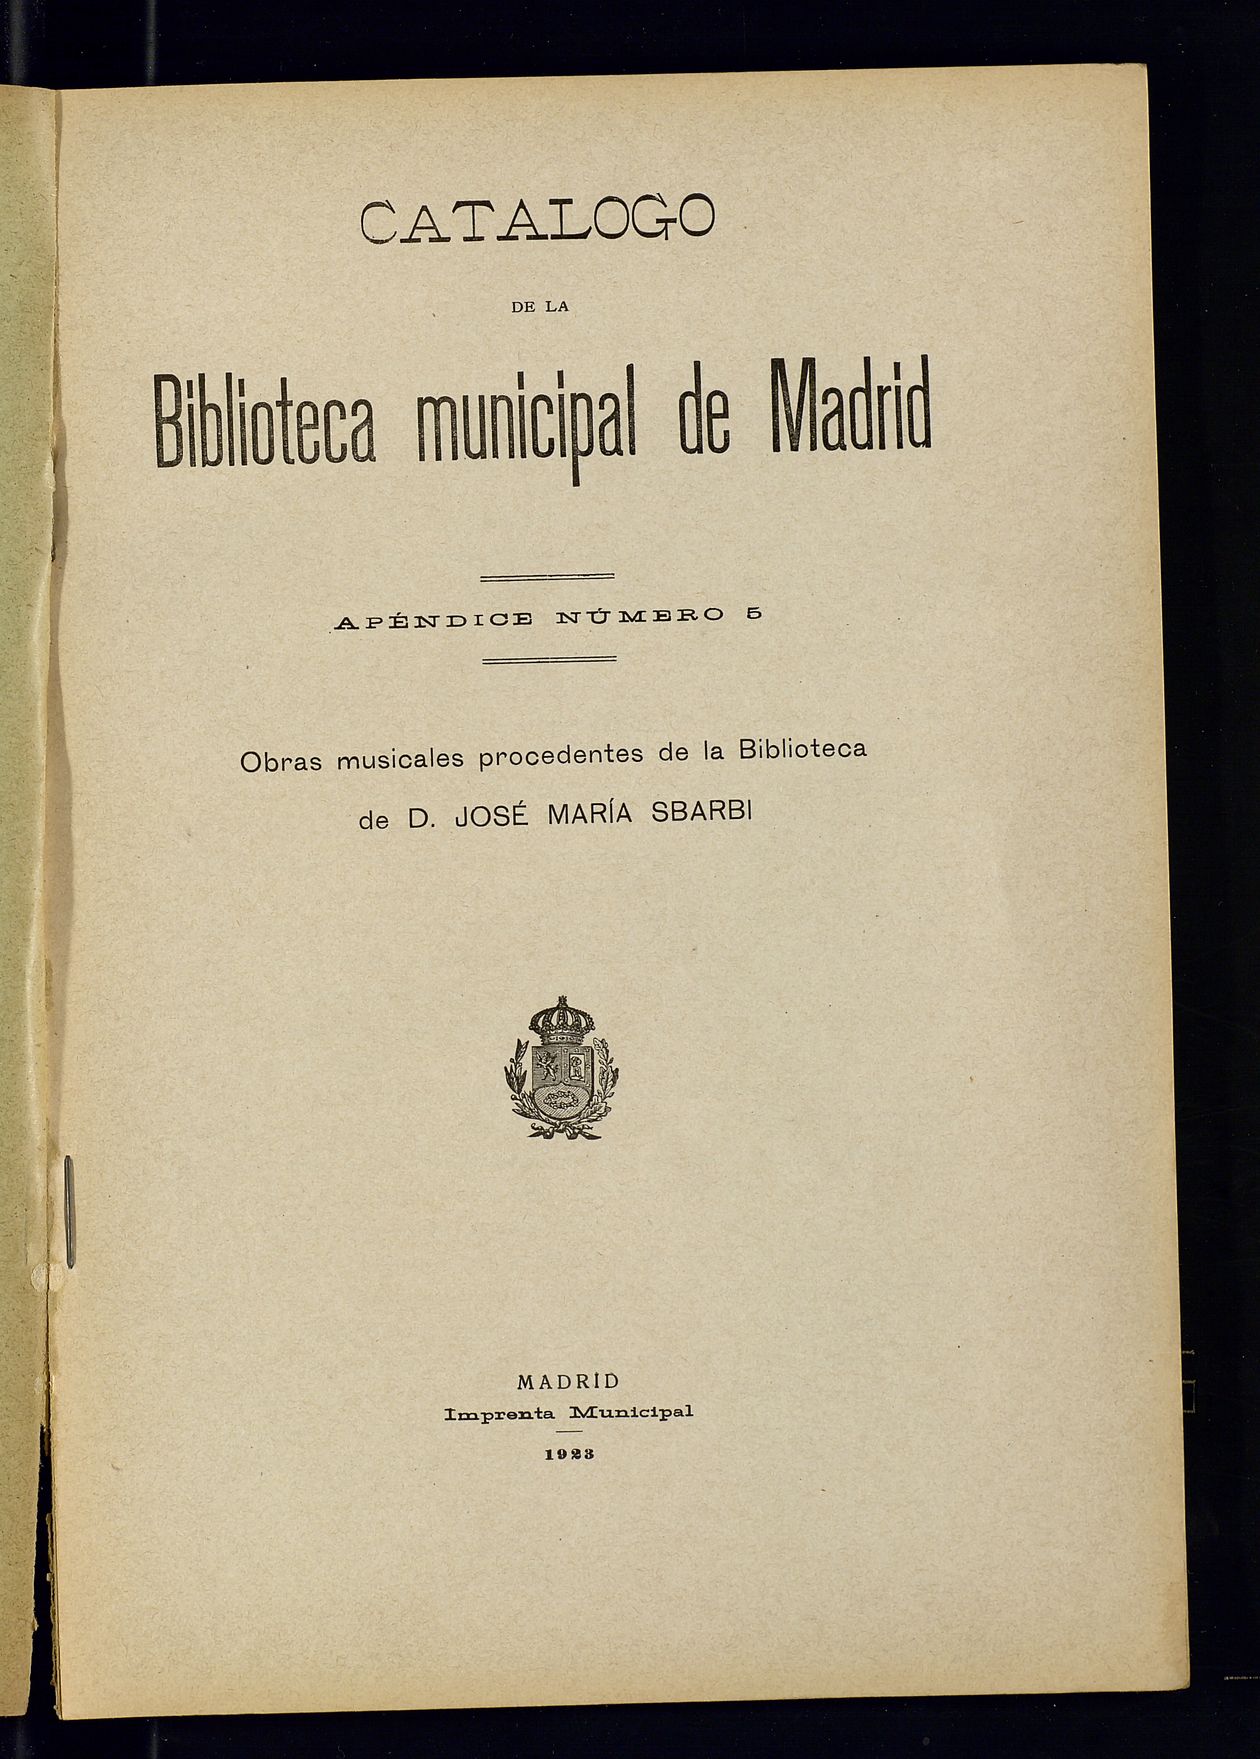 Catálogo de la Biblioteca Municipal de Madrid. Apéndice número 5 : Obras musicales procedentes de la Biblioteca de D. José María Sbarbi